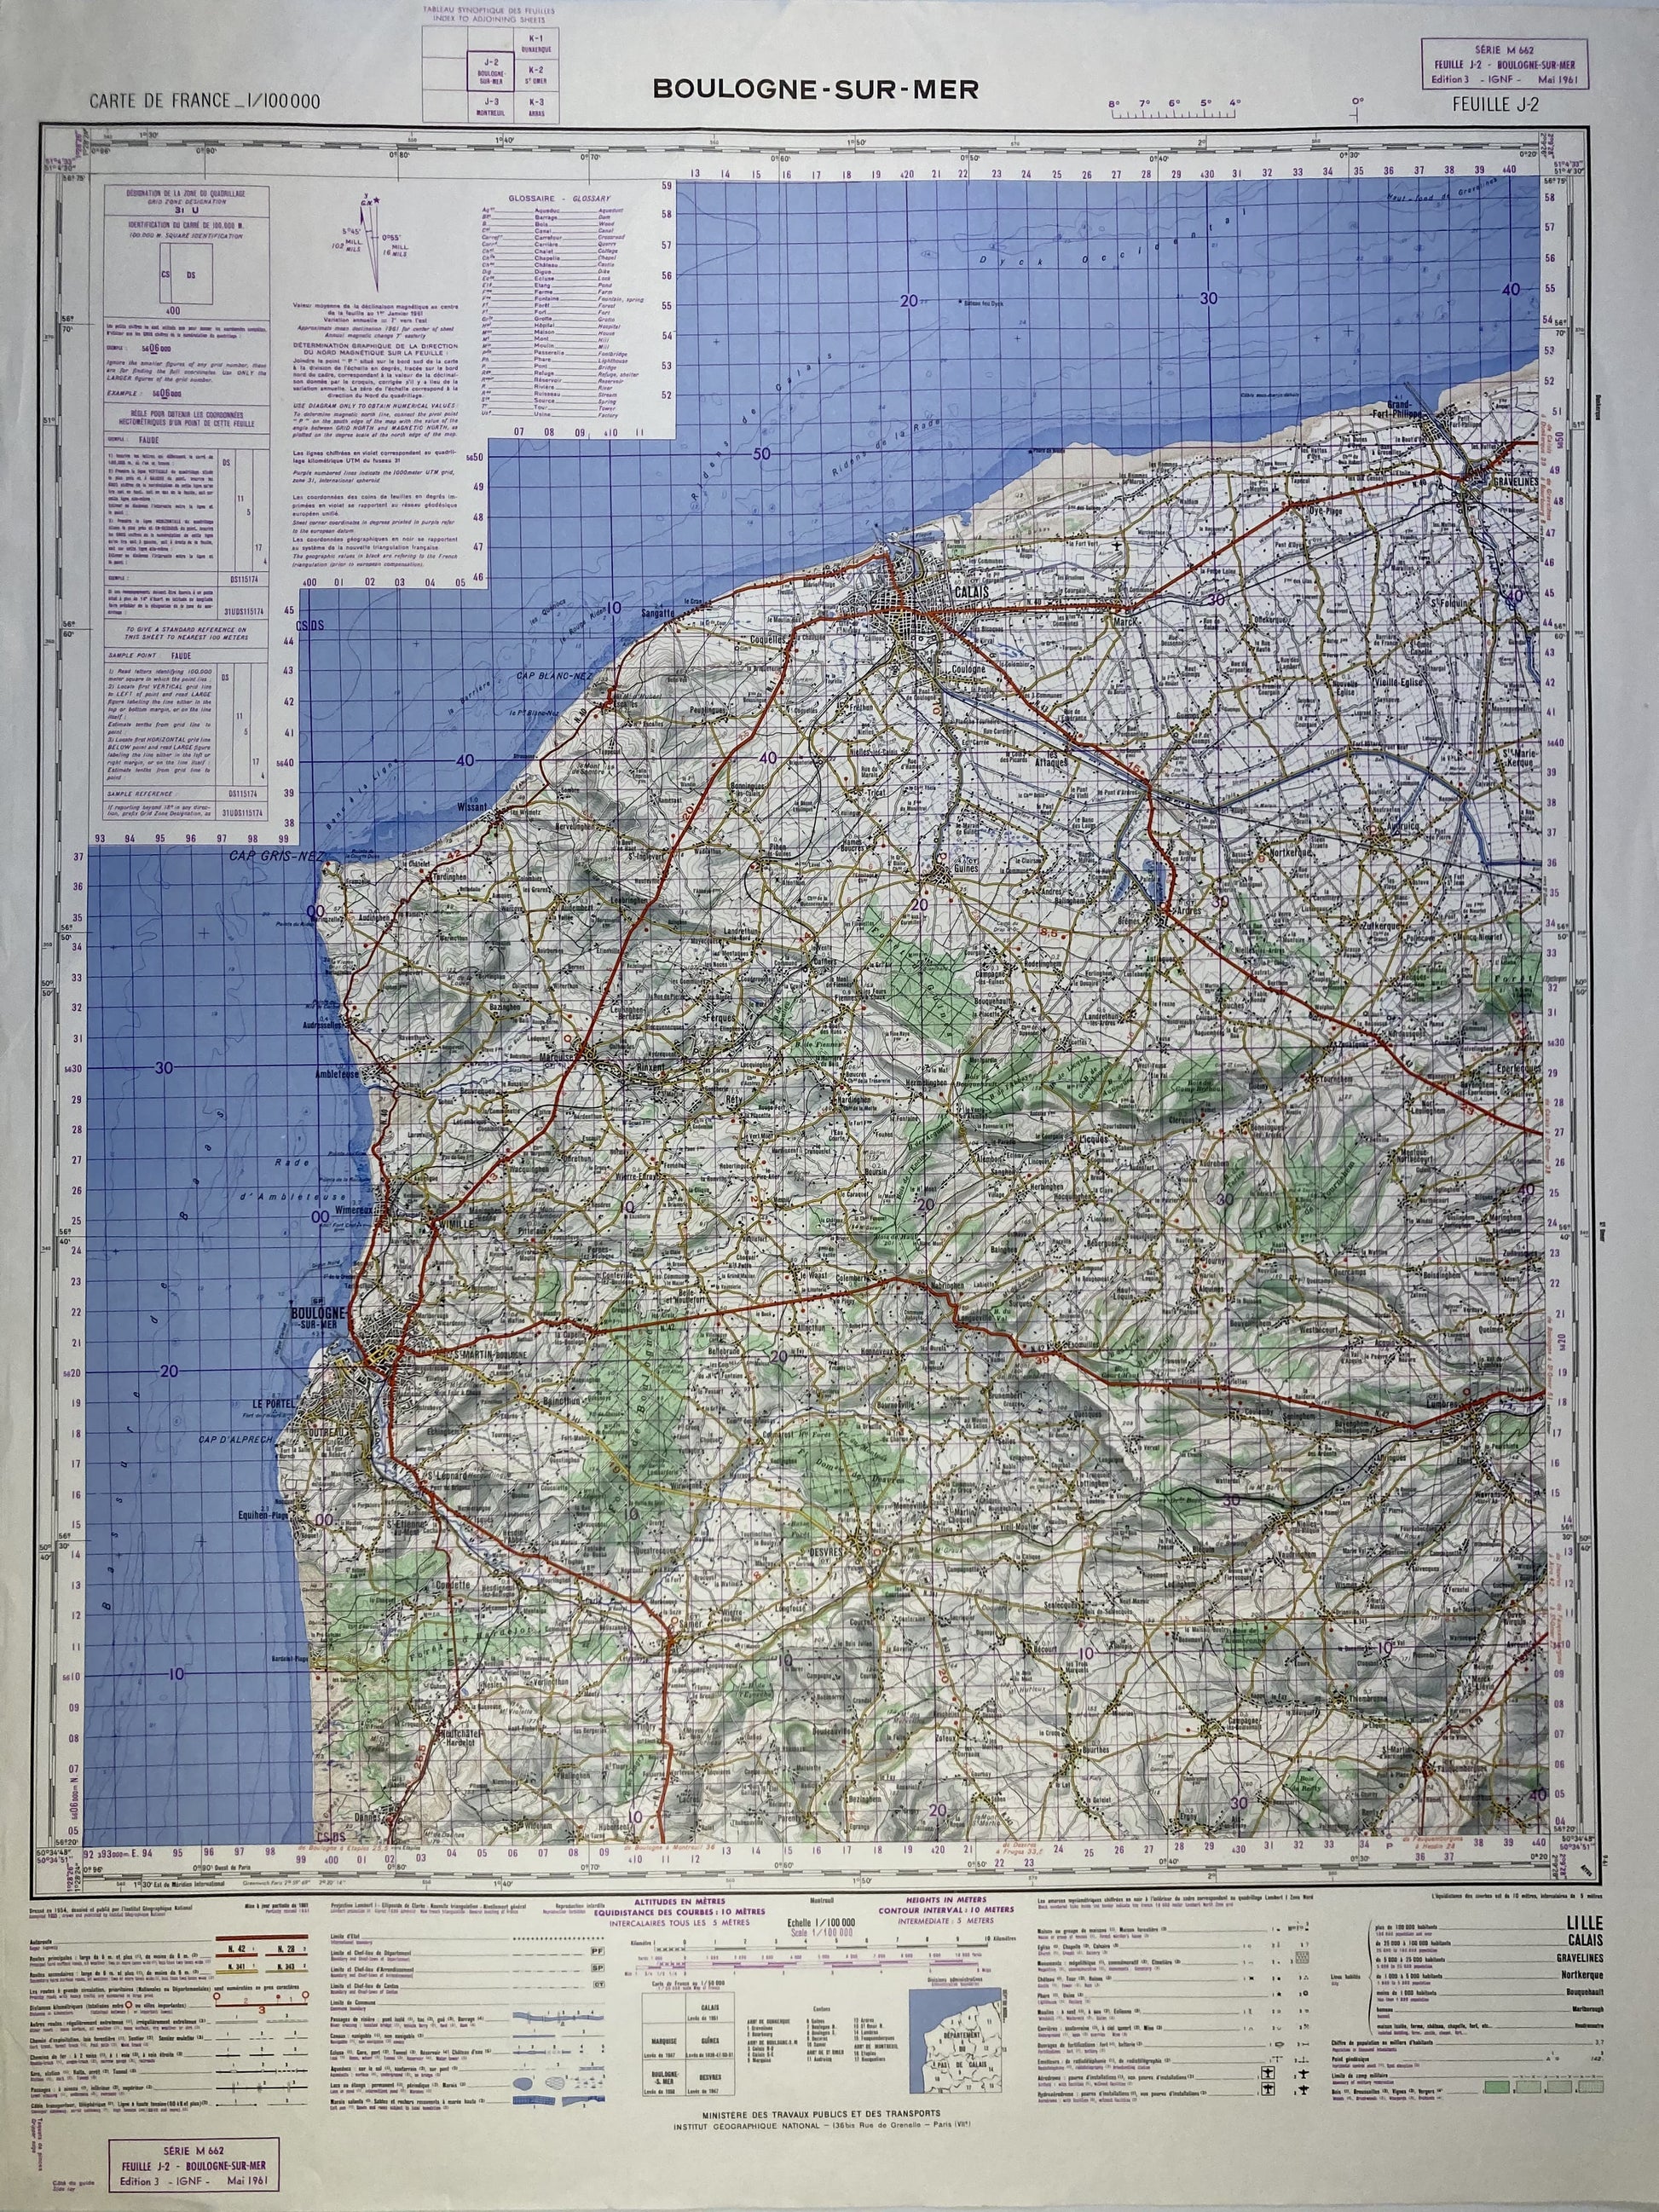 Carte IGN ancienne de Boulogne-sur-Mer